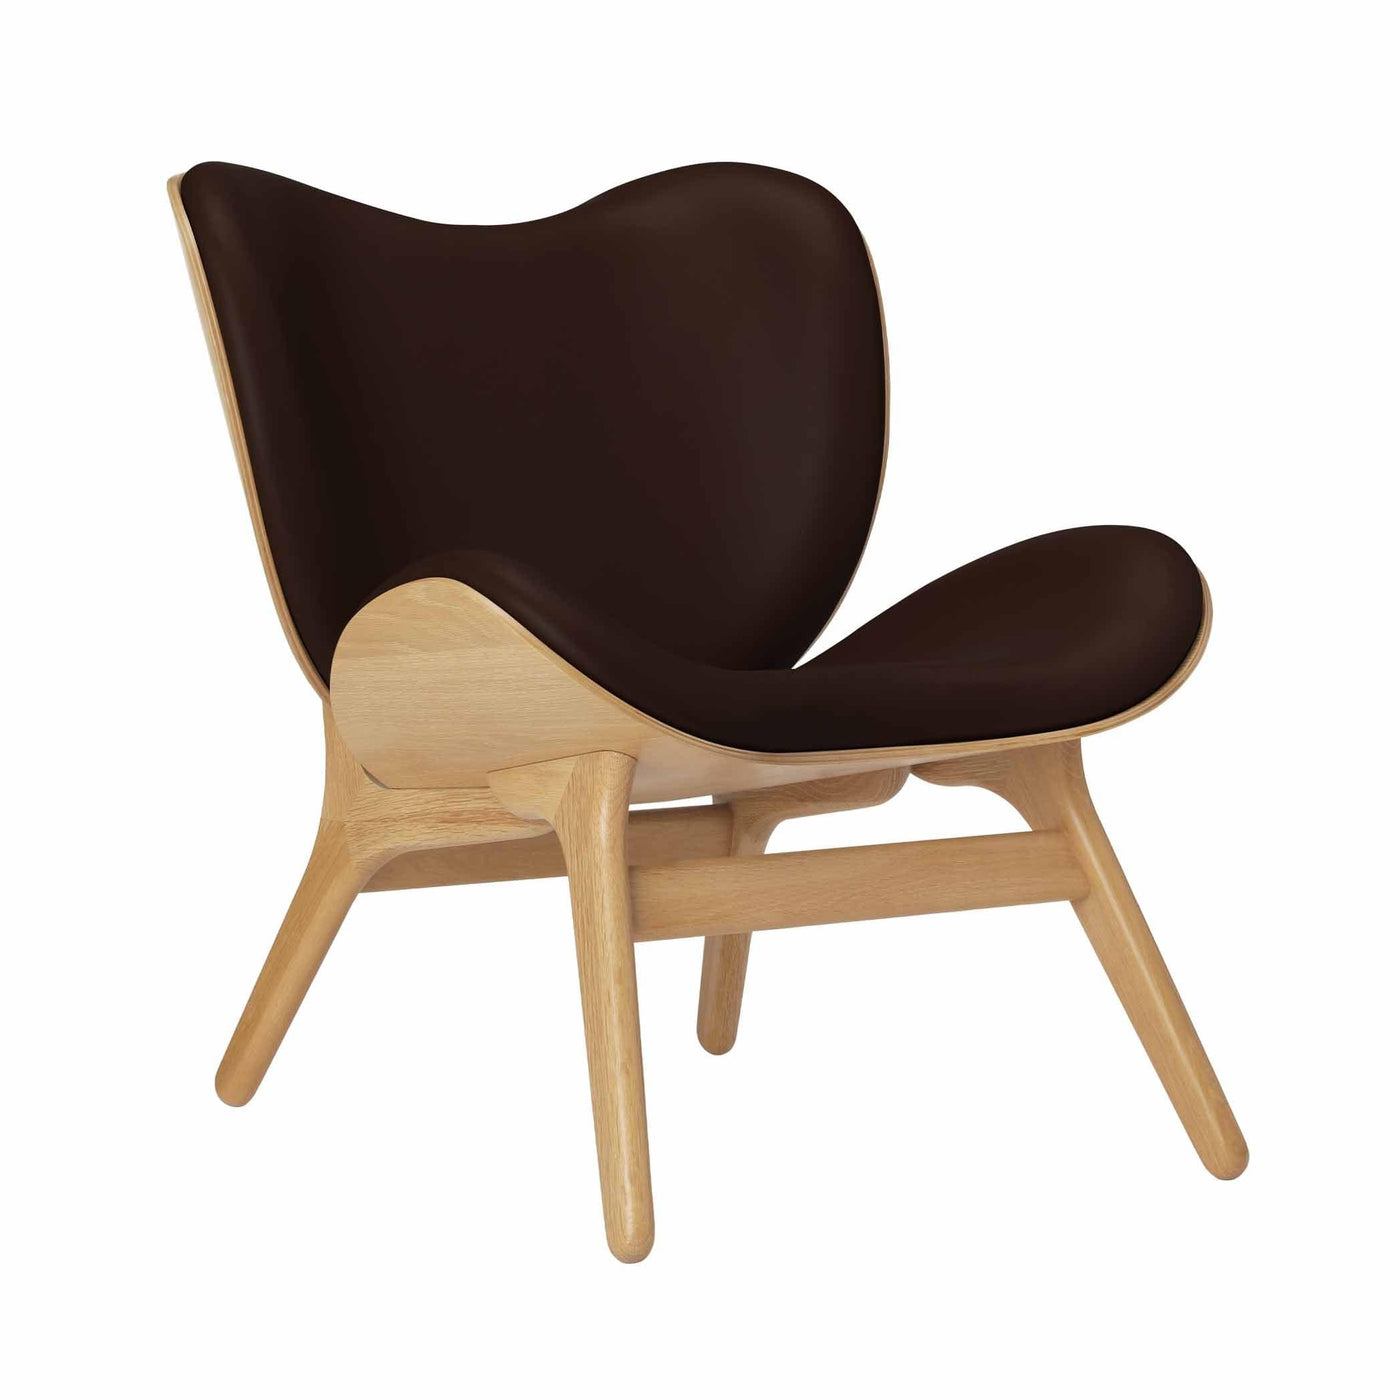 Umage A Conversation Piece Low, fauteuil confortable avec dossier bas, en bois et tissu, chêne, cuir brun